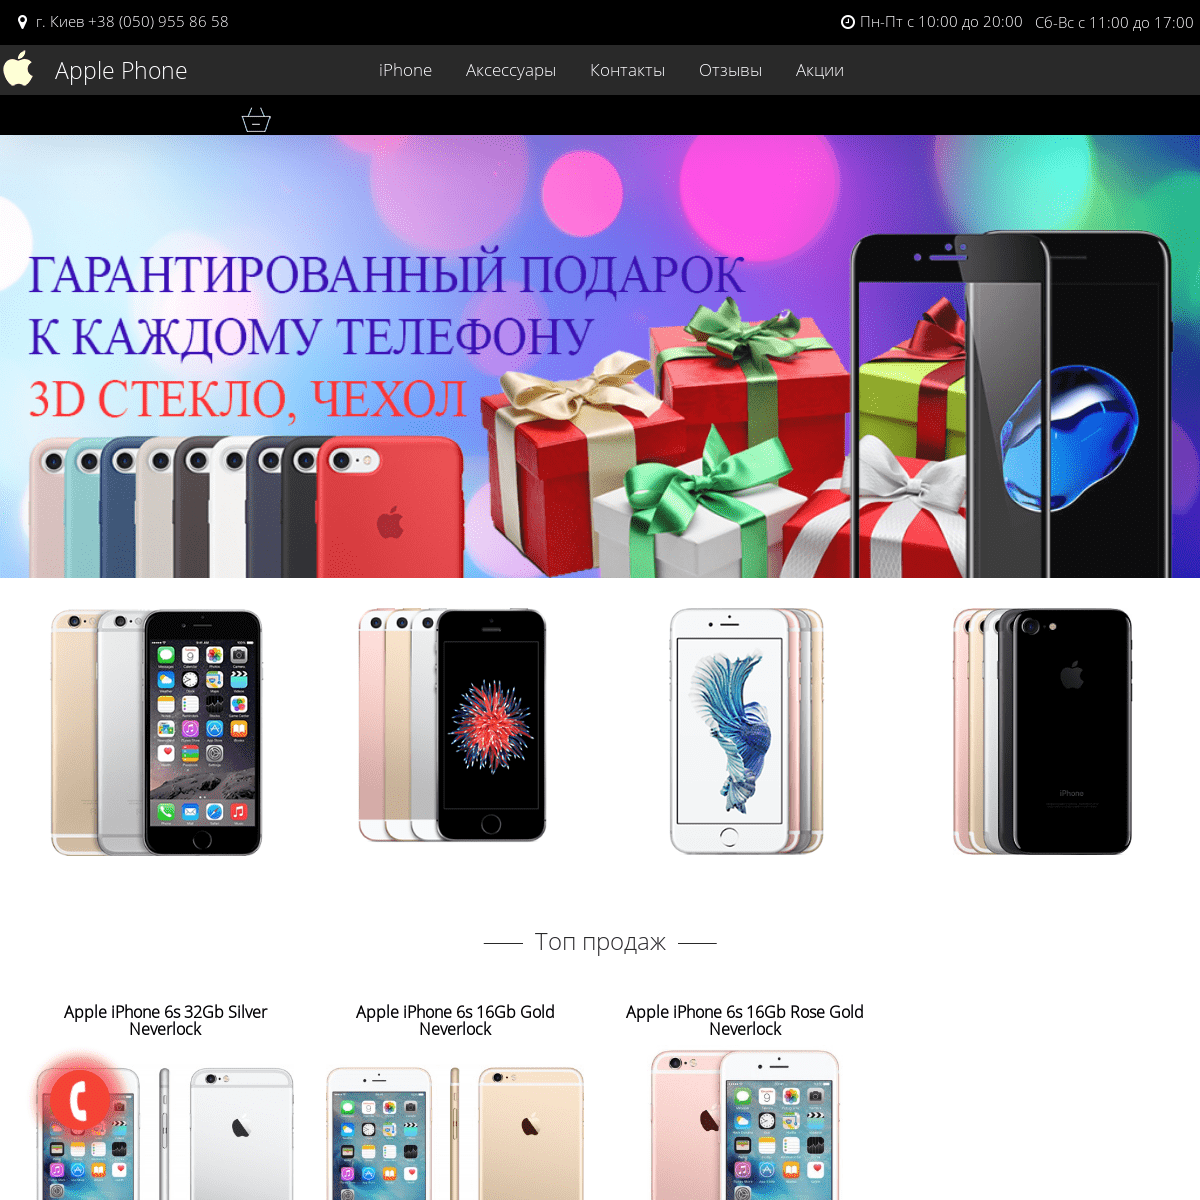 applephone.in.ua